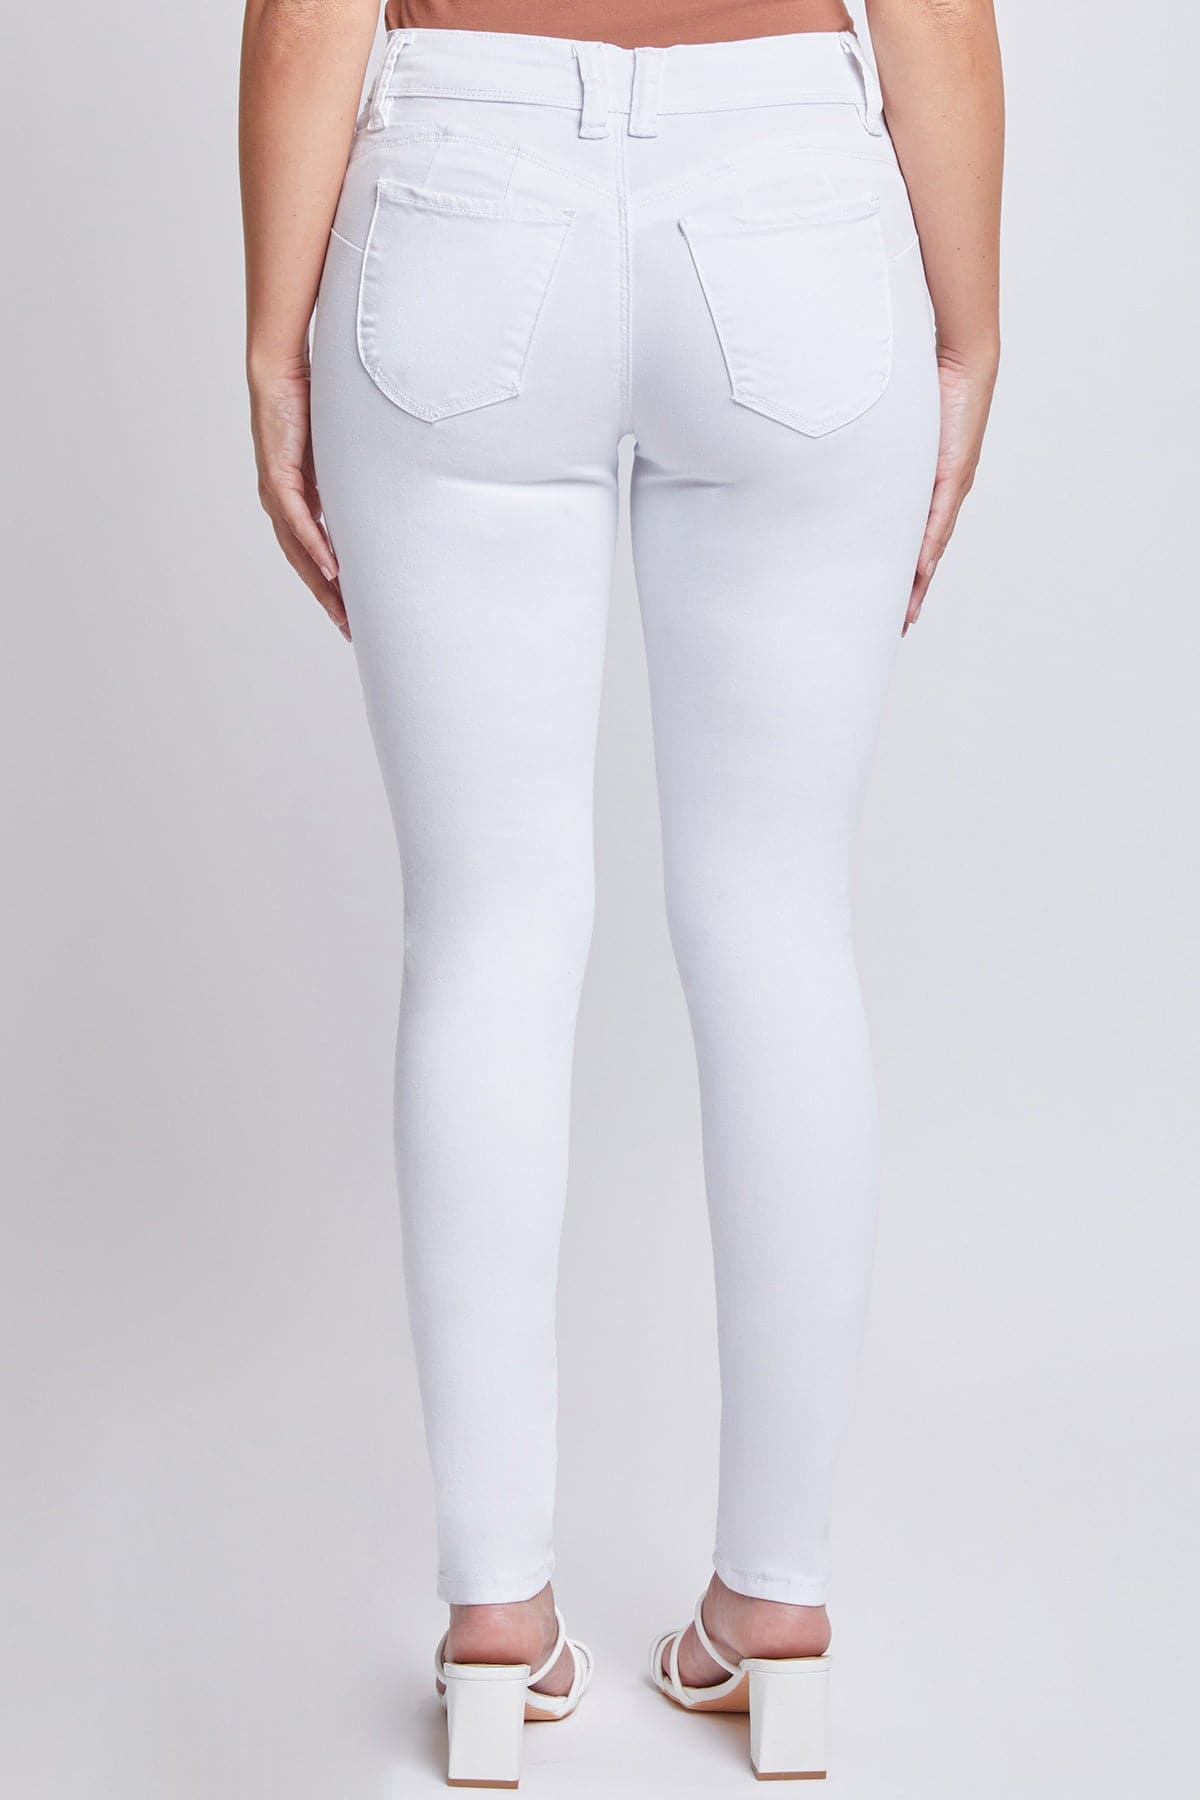 Women's Sustainable WannaBettaButt Mid Rise Skinny Jeans